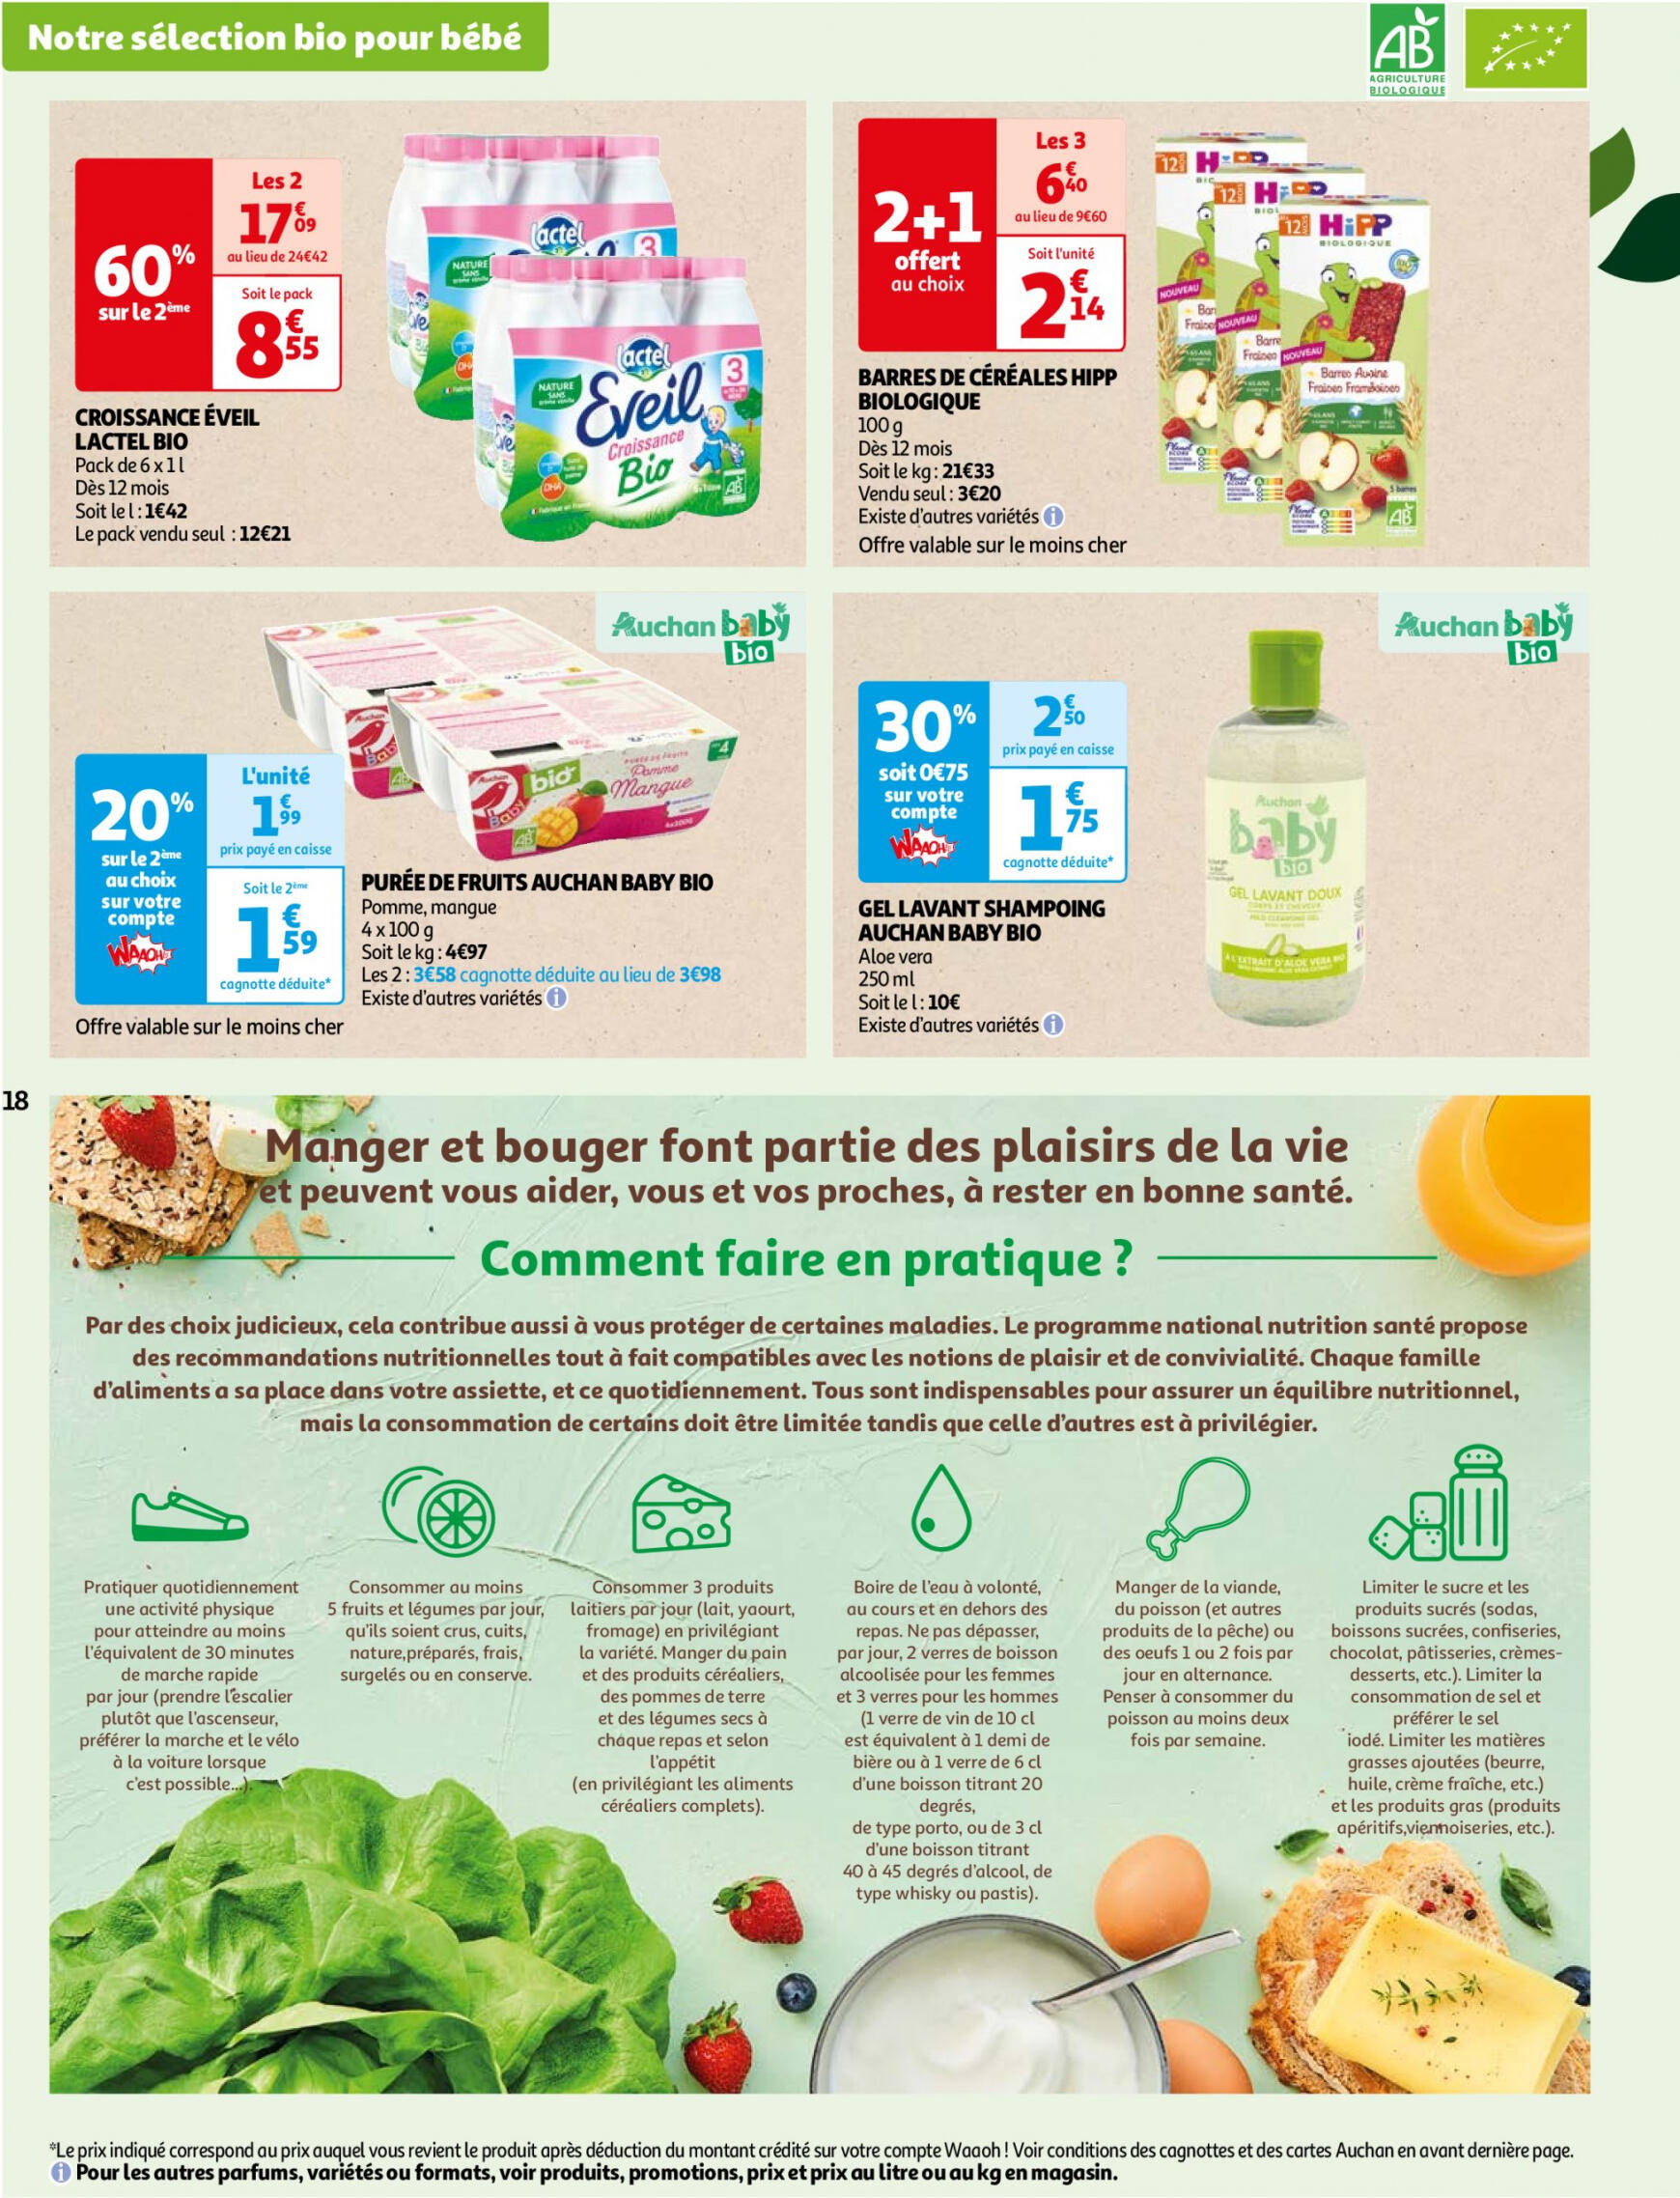 auchan - Auchan - Faites le plein de bio à prix bas folder huidig 22.05. - 03.06. - page: 18